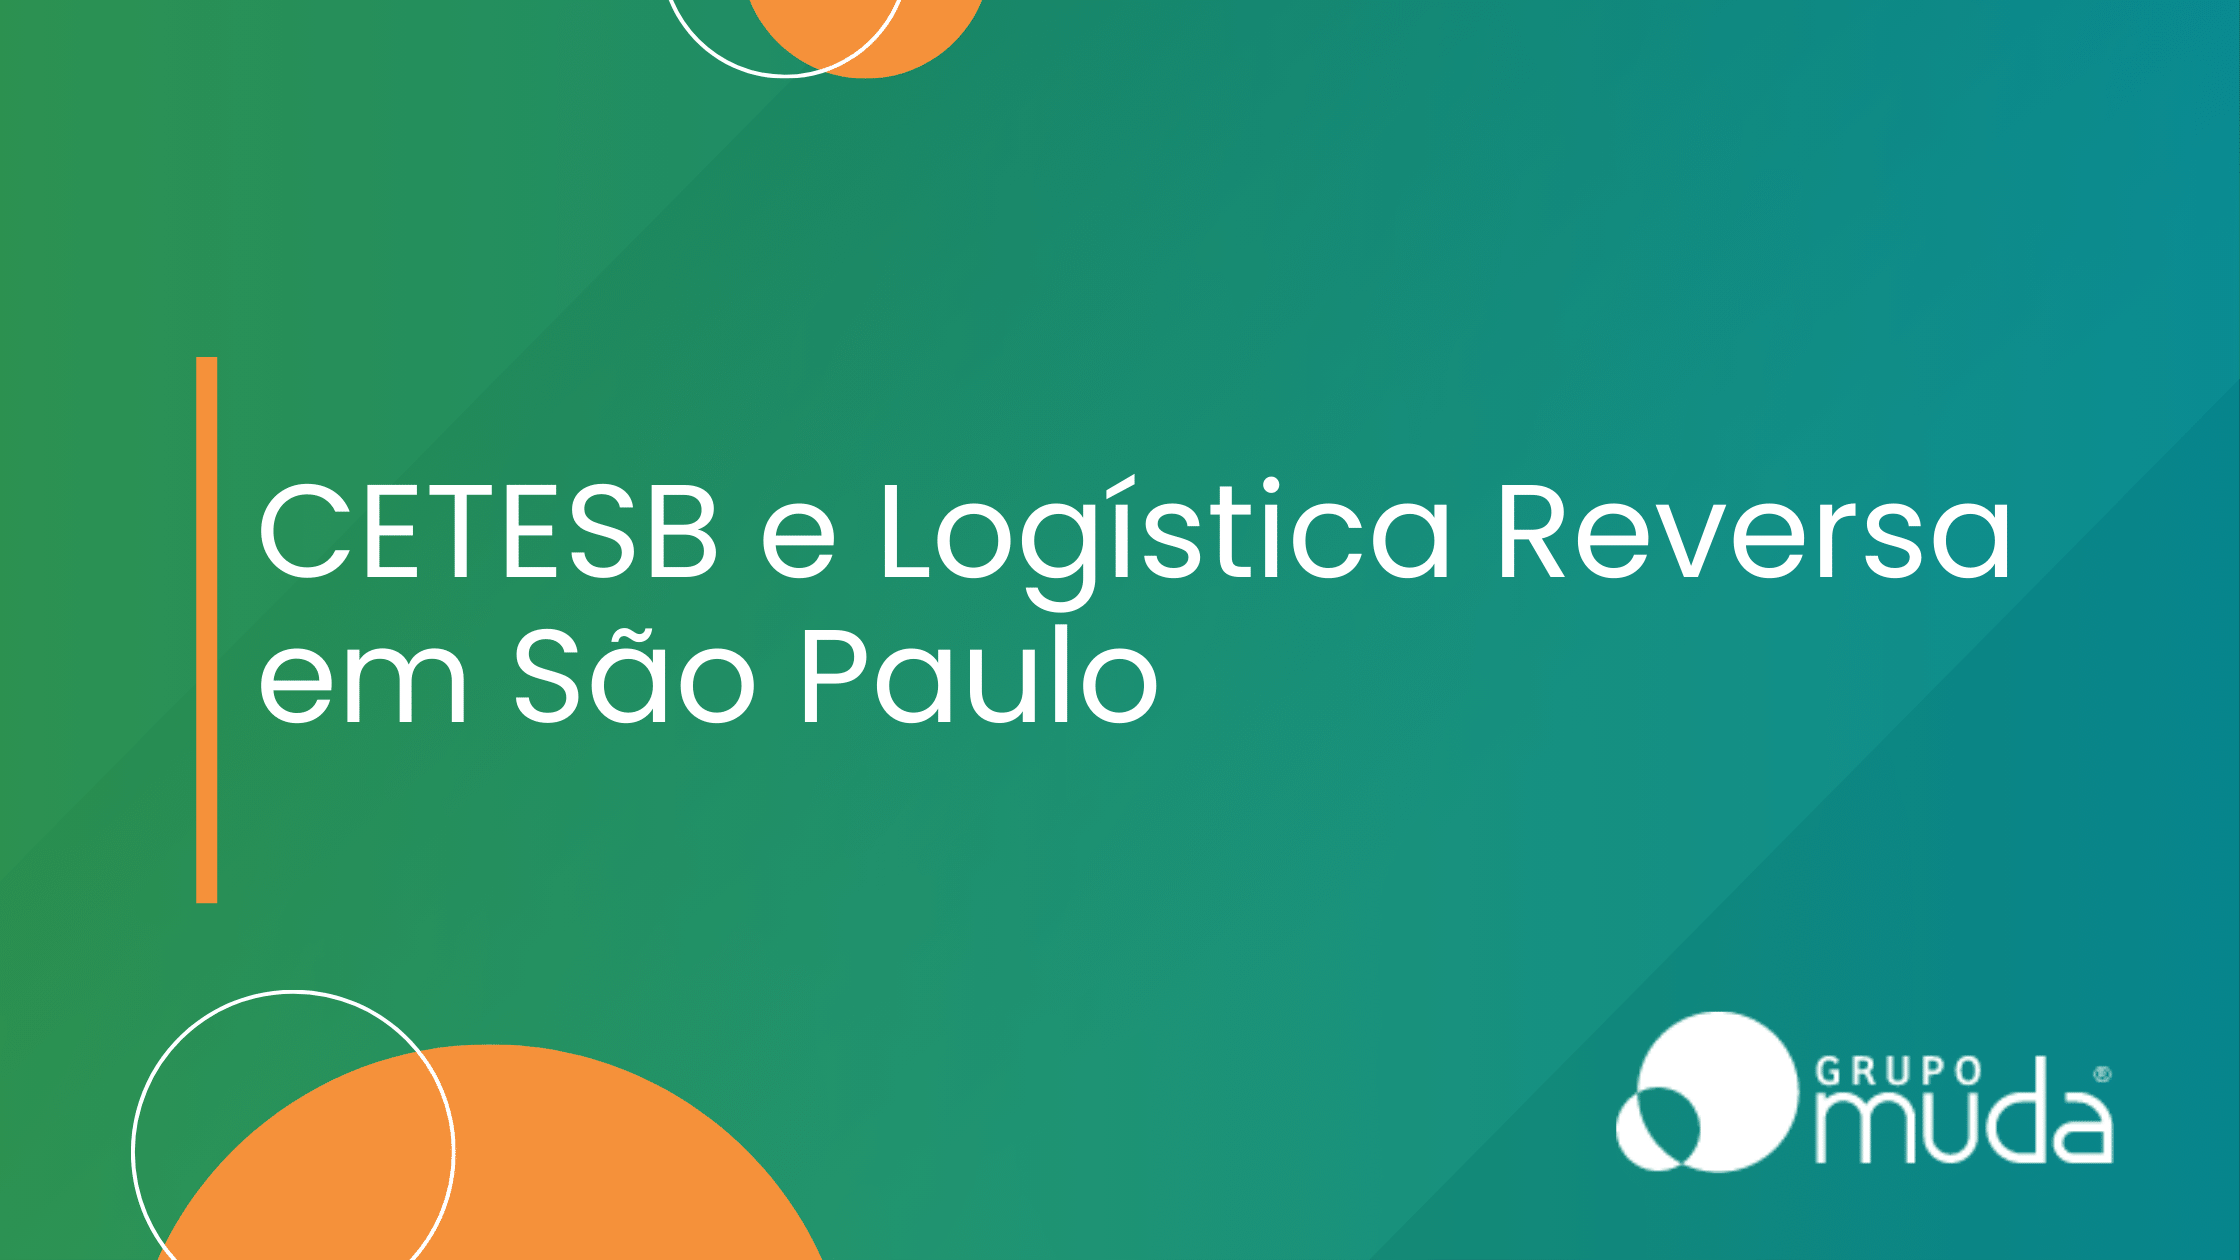 CETESB e Logística Reversa em São Paulo